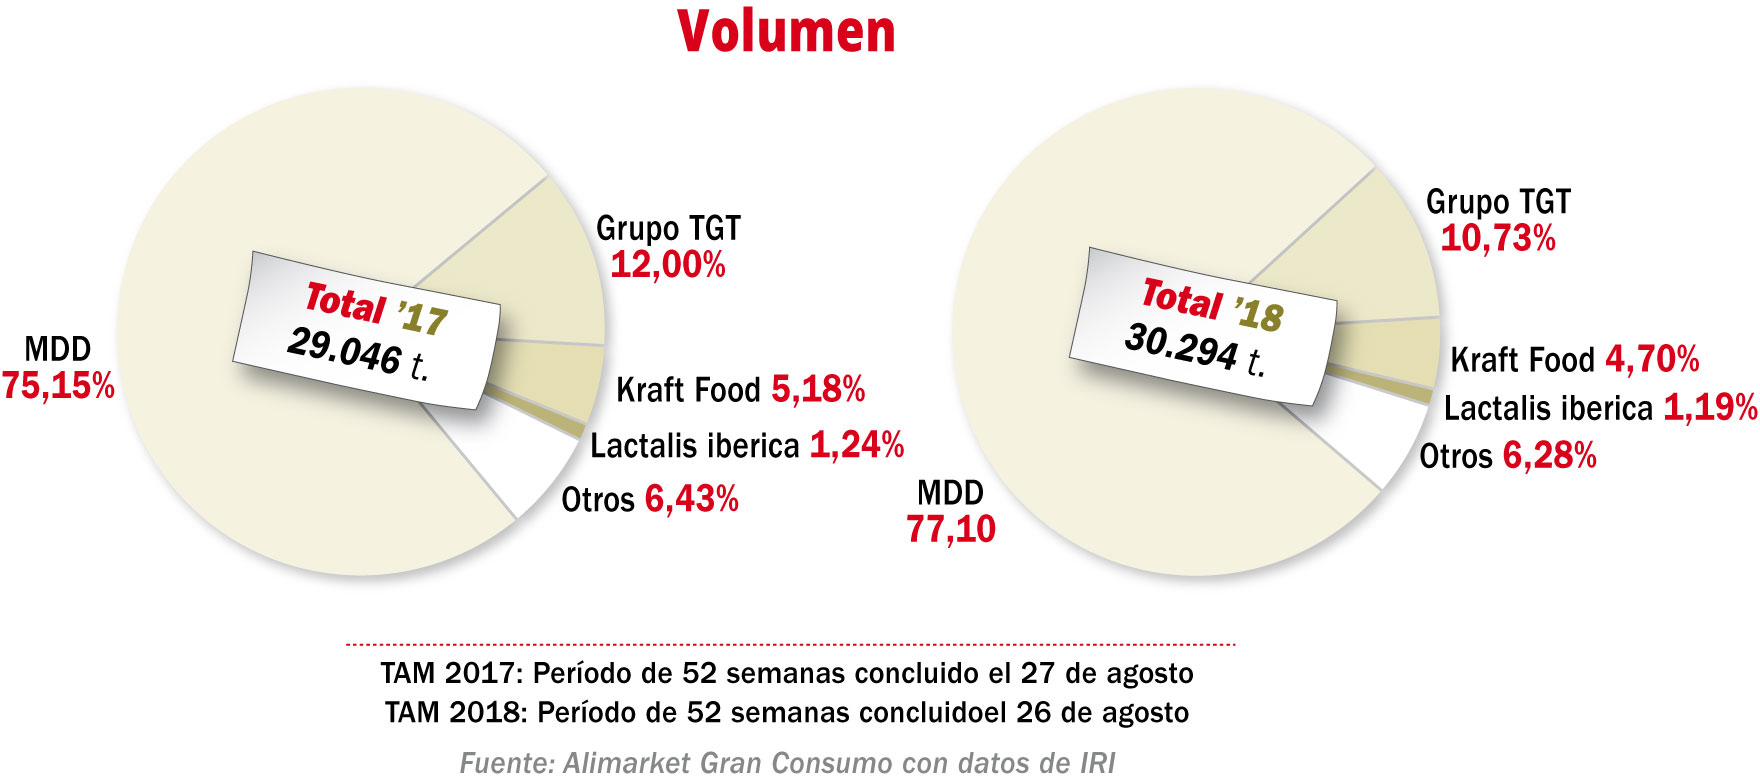 Principales operadores en queso rallado en libreservicio (%) (Volumen)